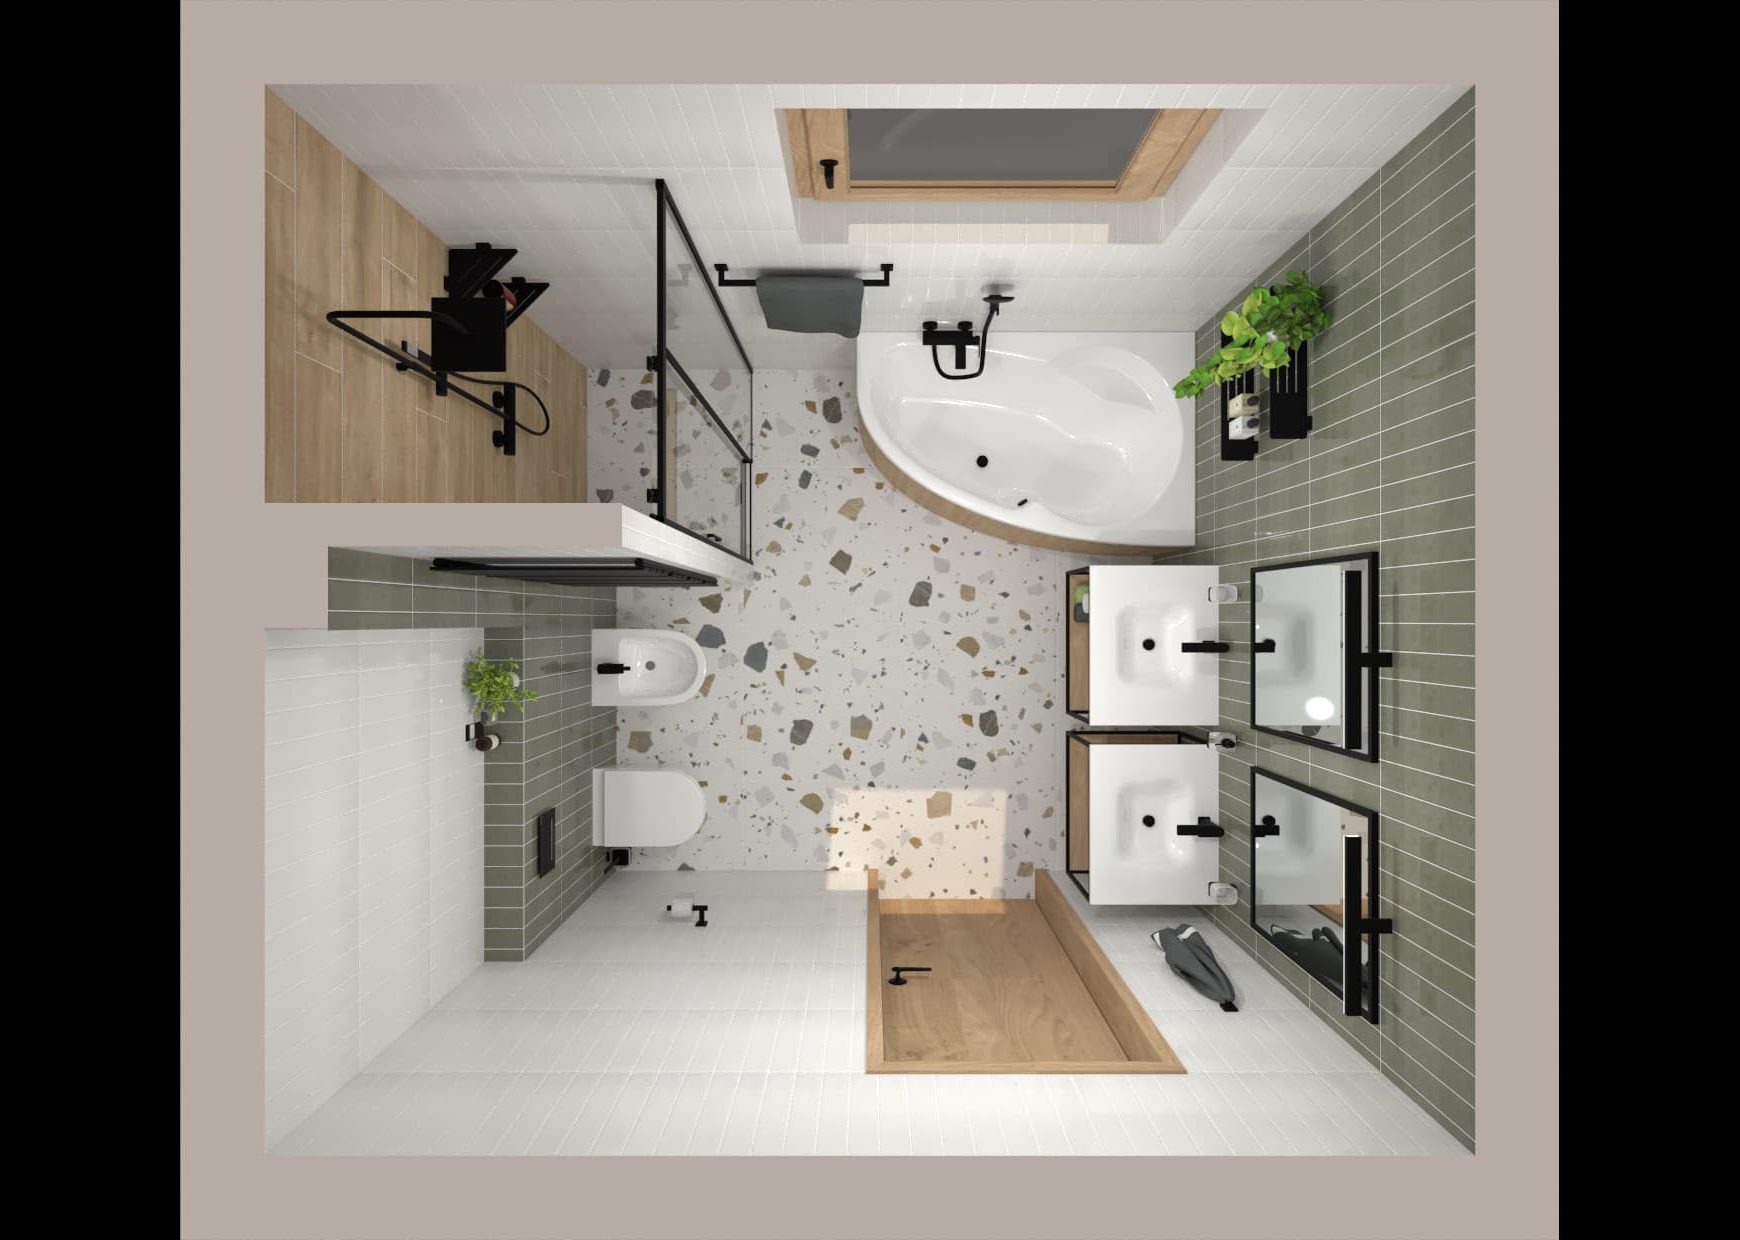 SIKO Grafický návrh kúpeľne s vaňou a sprchovacím kútom, pohľad zhora pre dokonalú predstavu o rozmiestnení zariaďovacích predmetov.